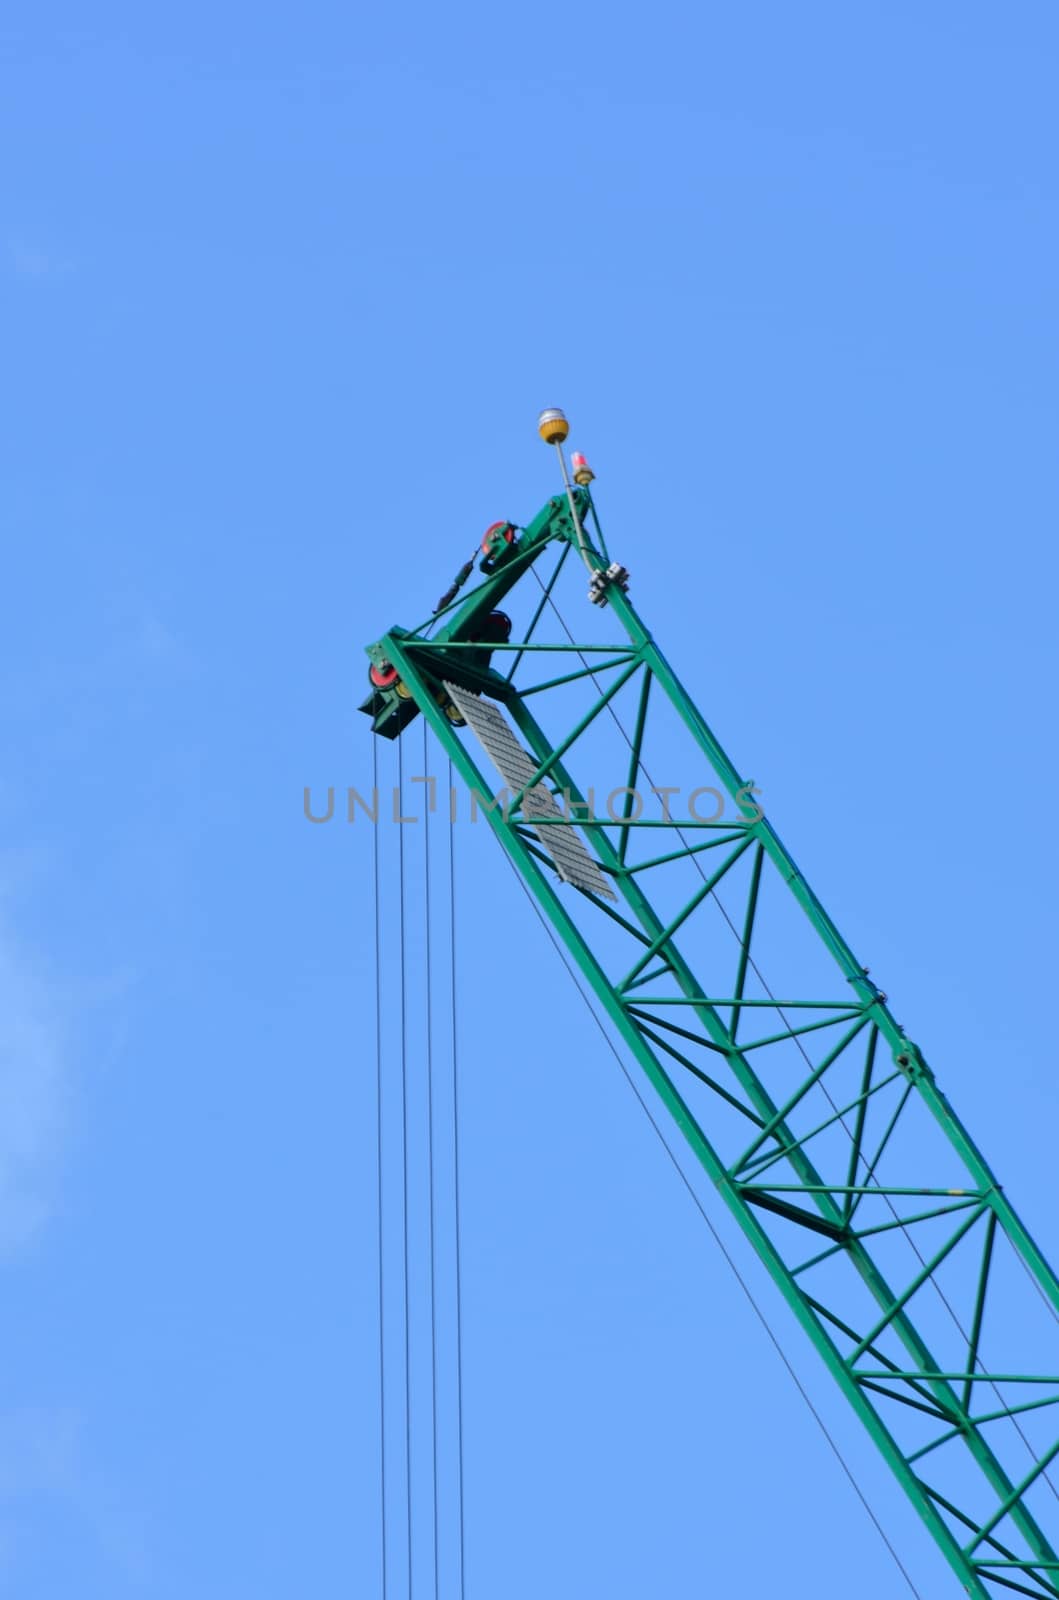 Construction Crane with blue sky